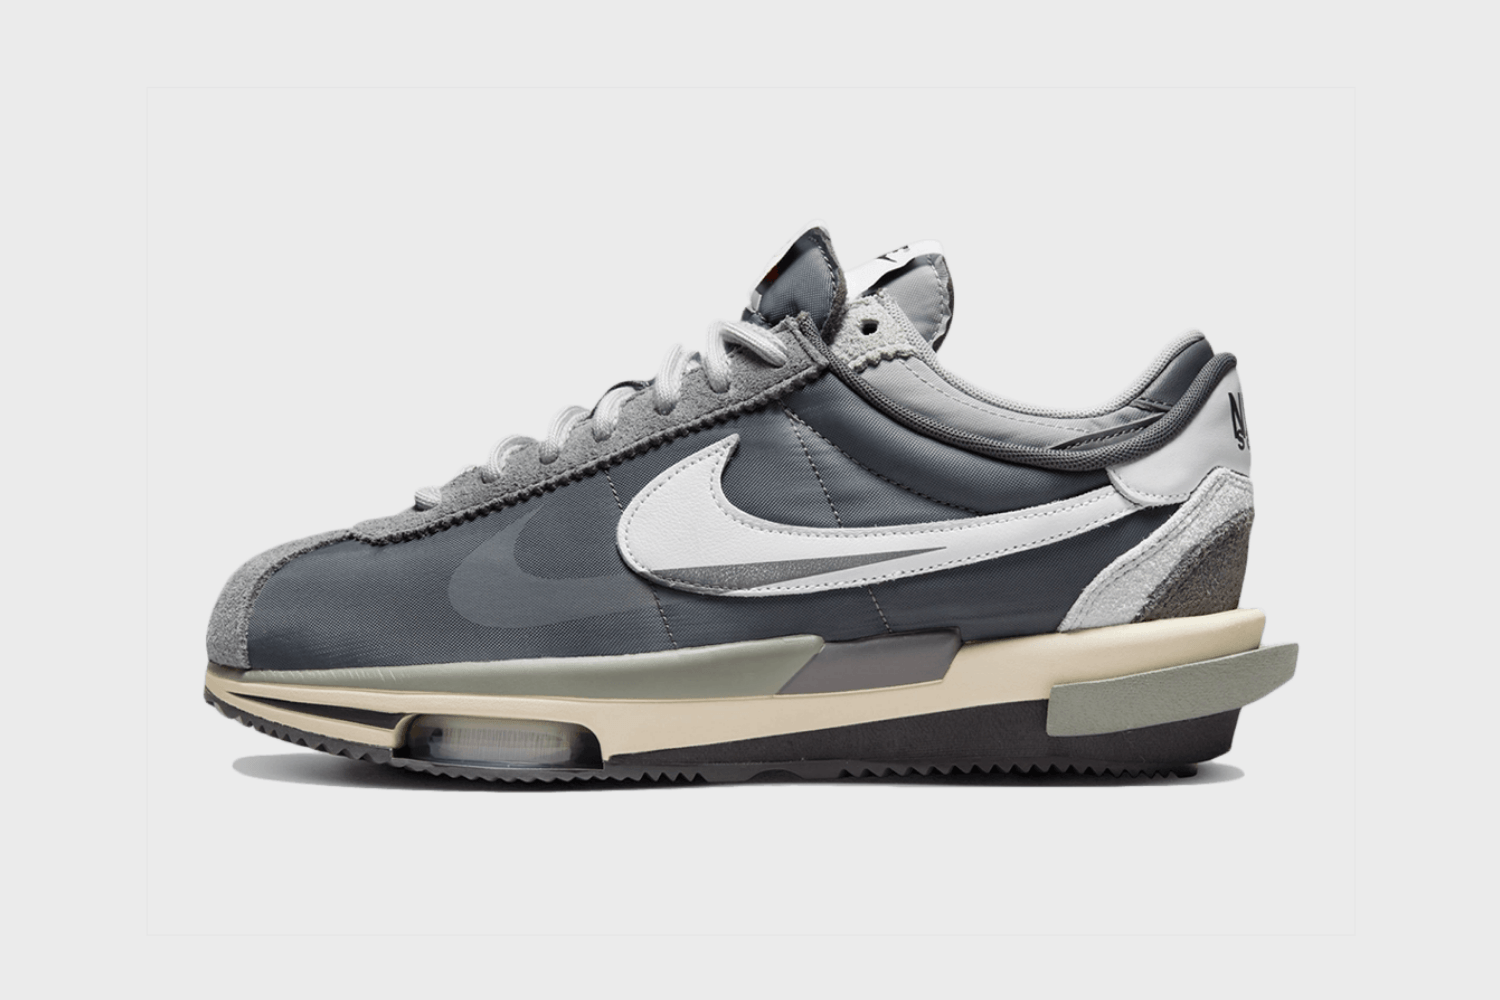 Sacai x Nike Cortez 4.0 erscheint in 'Grey' Colorway 